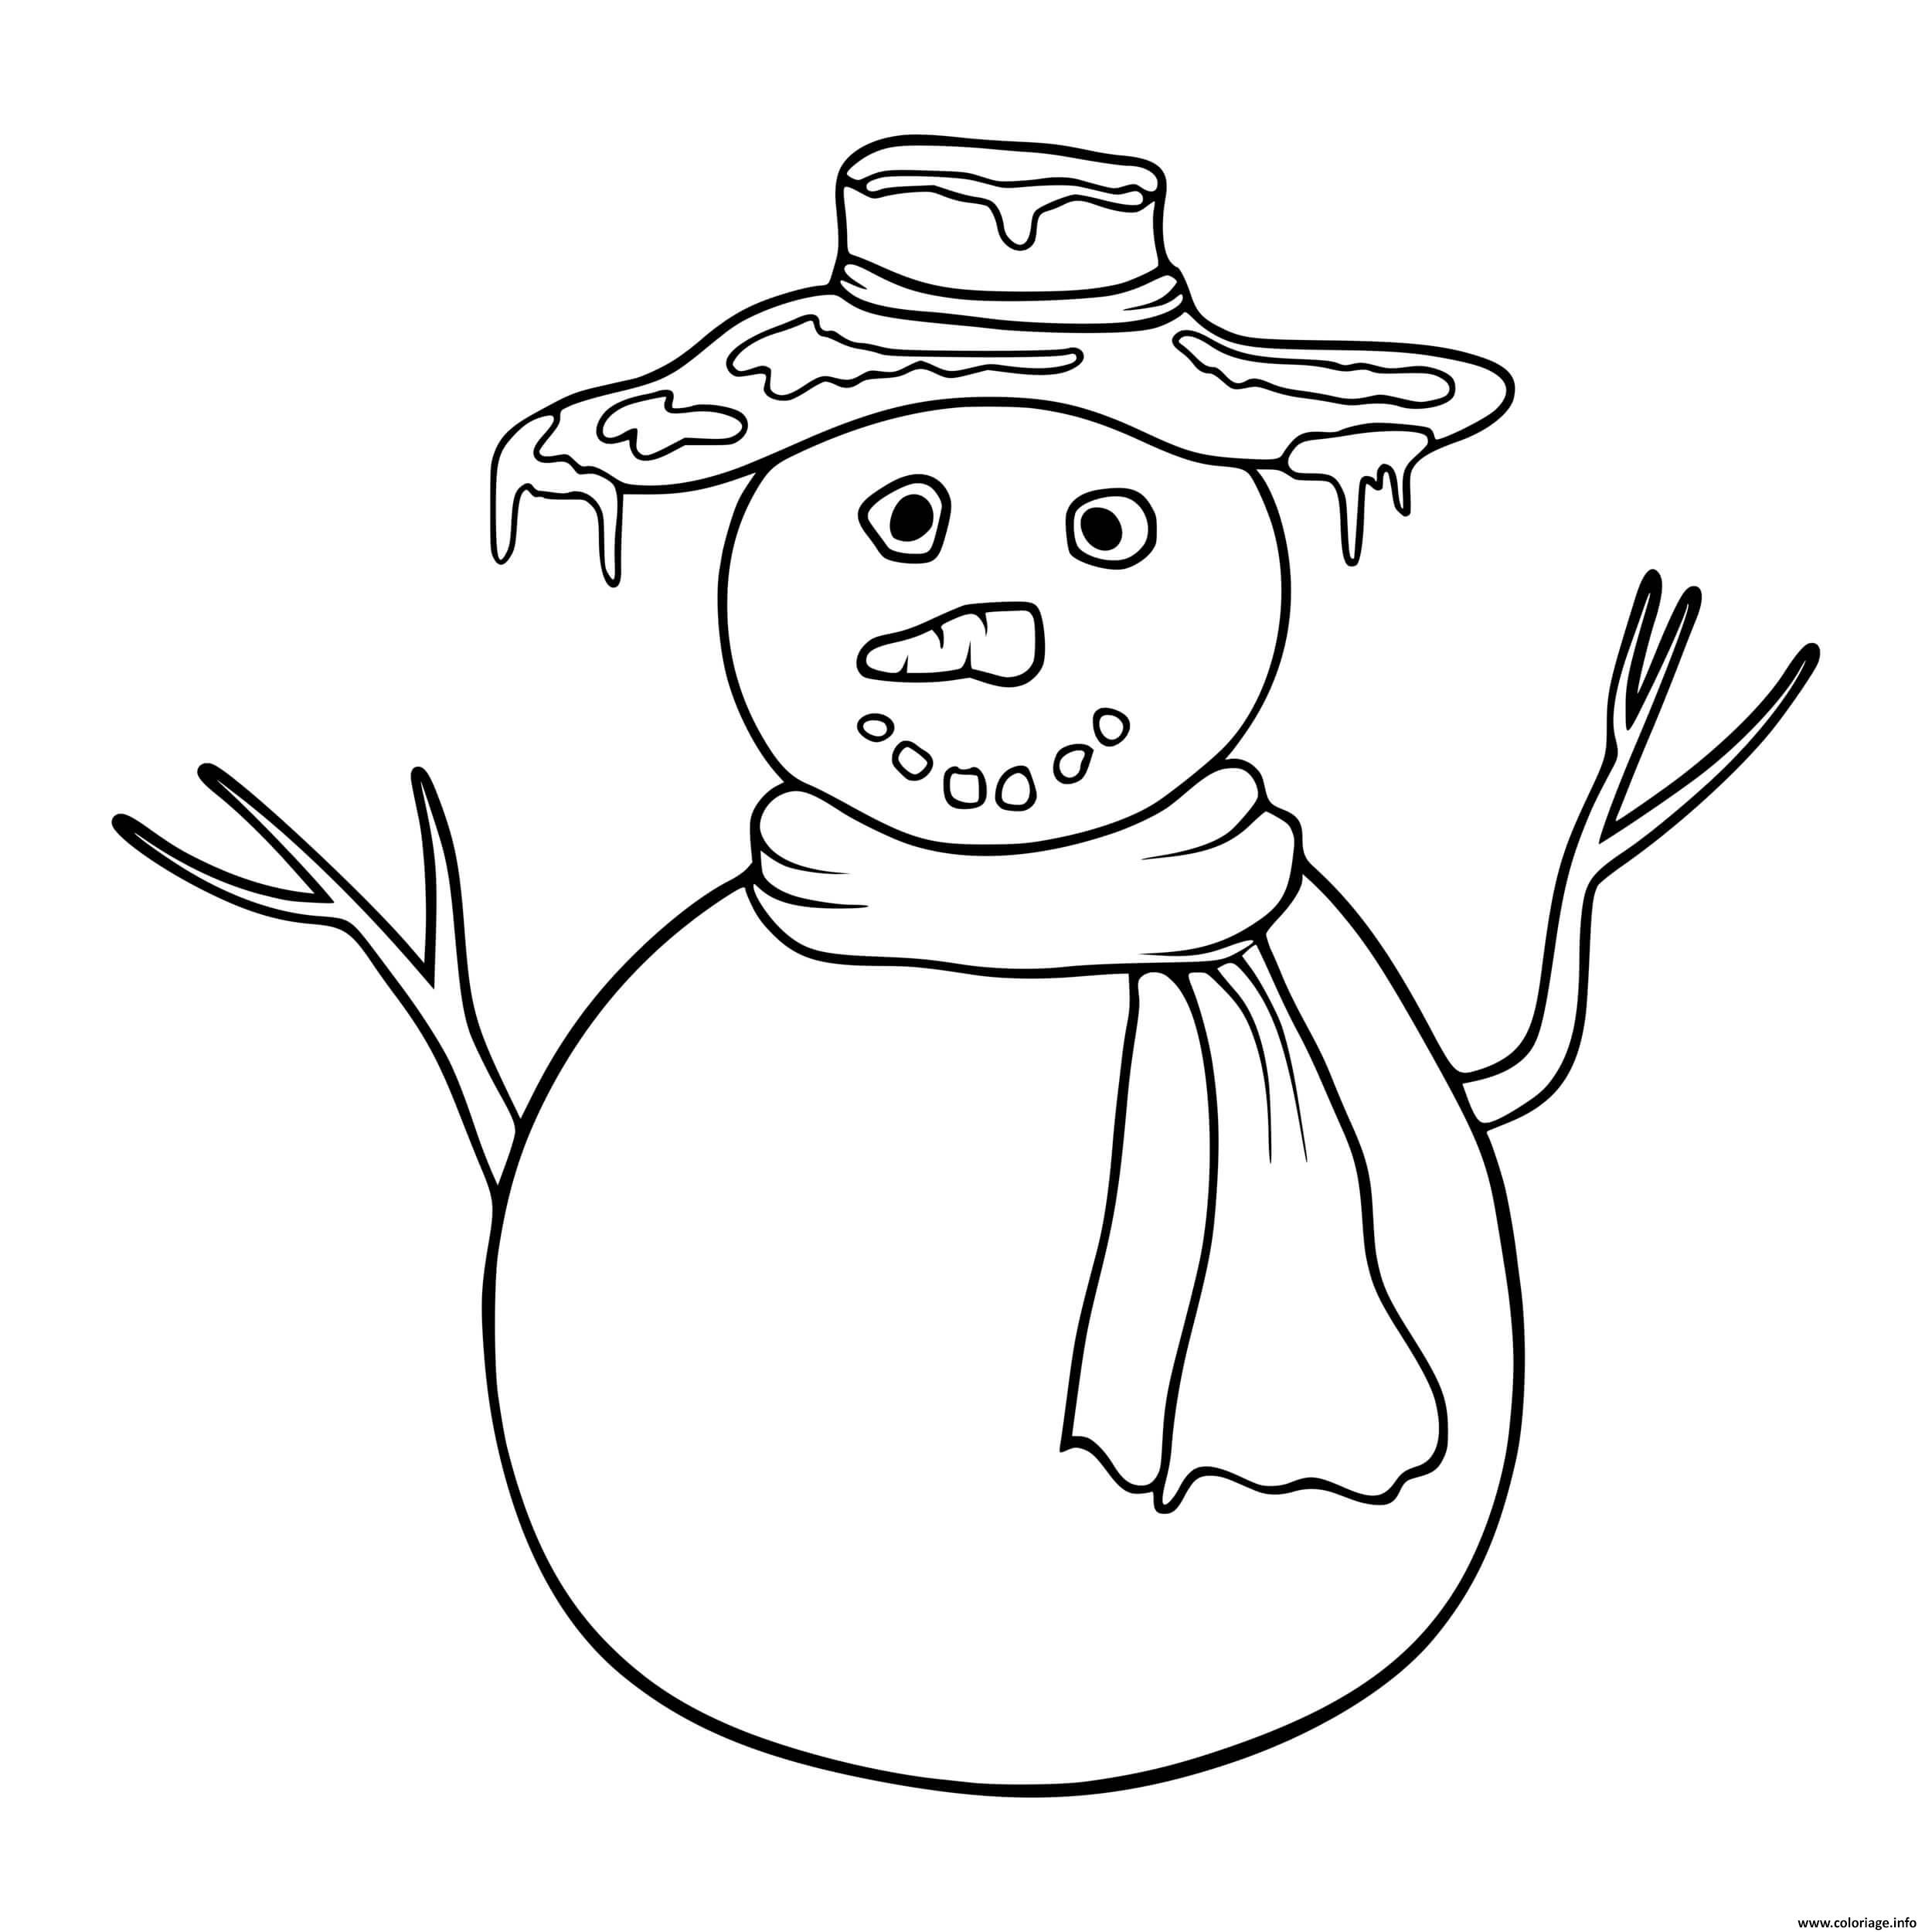 Dessin le bonhomme de neige est congele par le froid de decembre Coloriage Gratuit à Imprimer